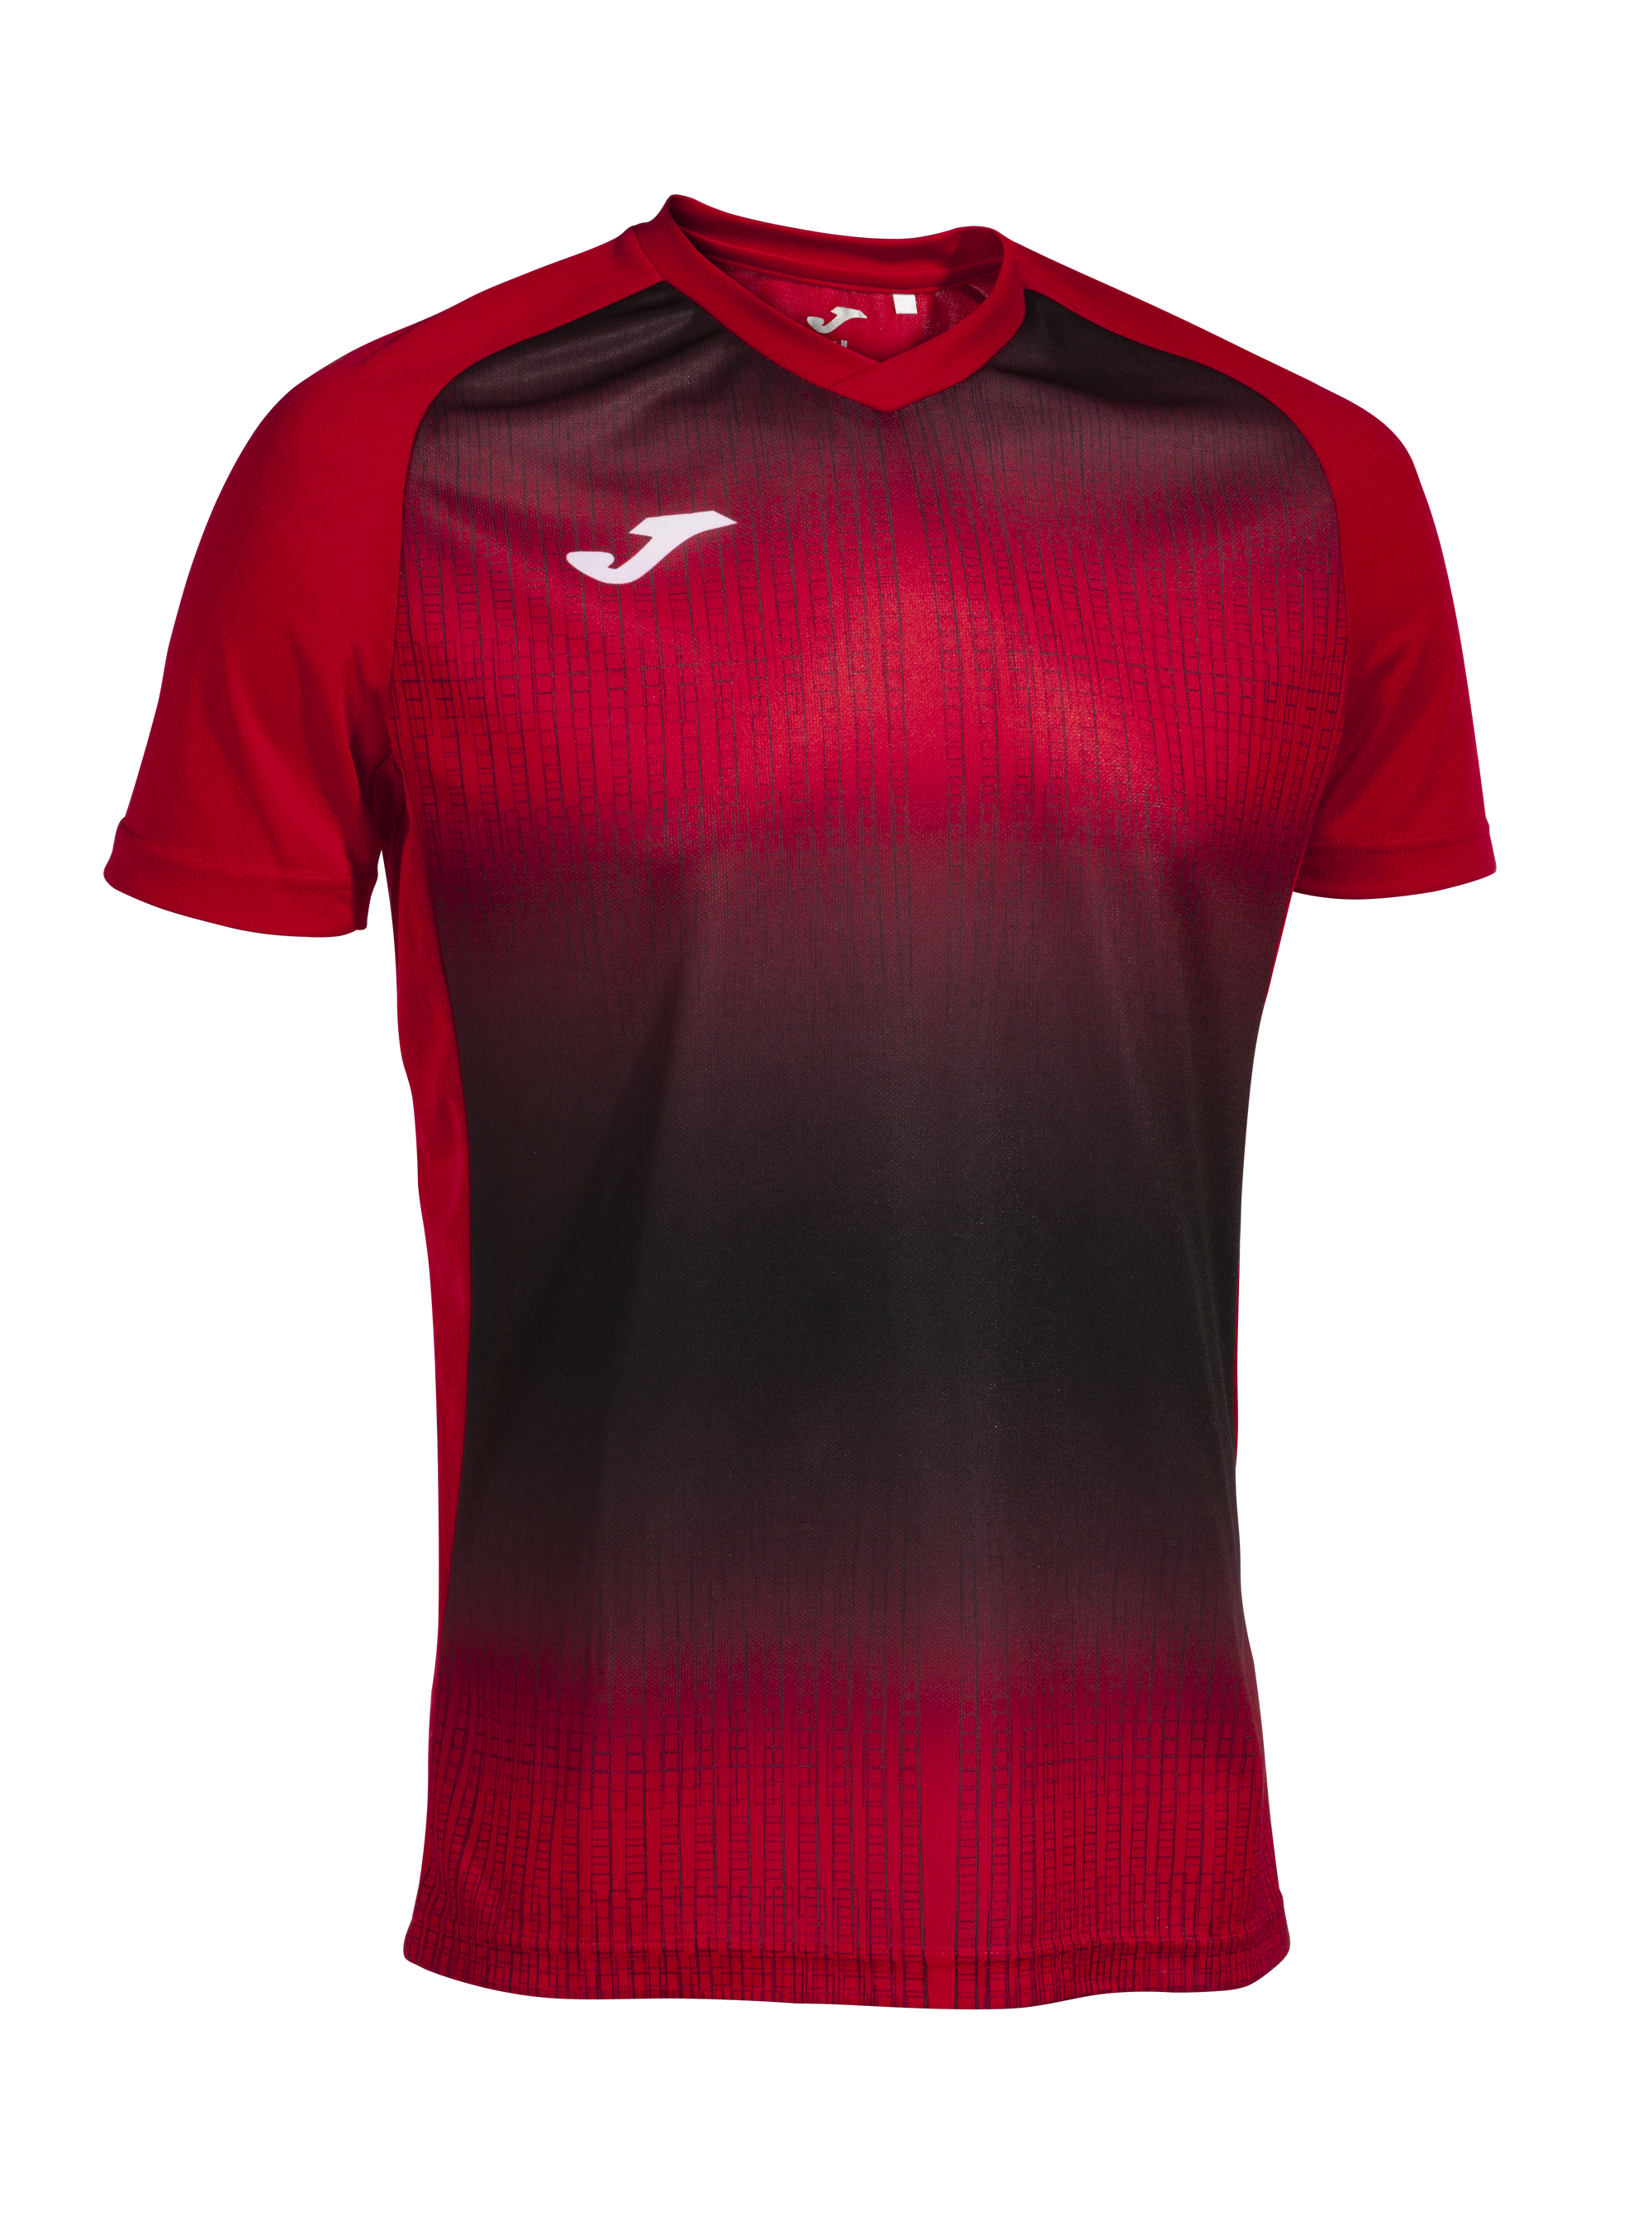 Joma Tiger V Short Sleeve T-Shirt - Red/Black